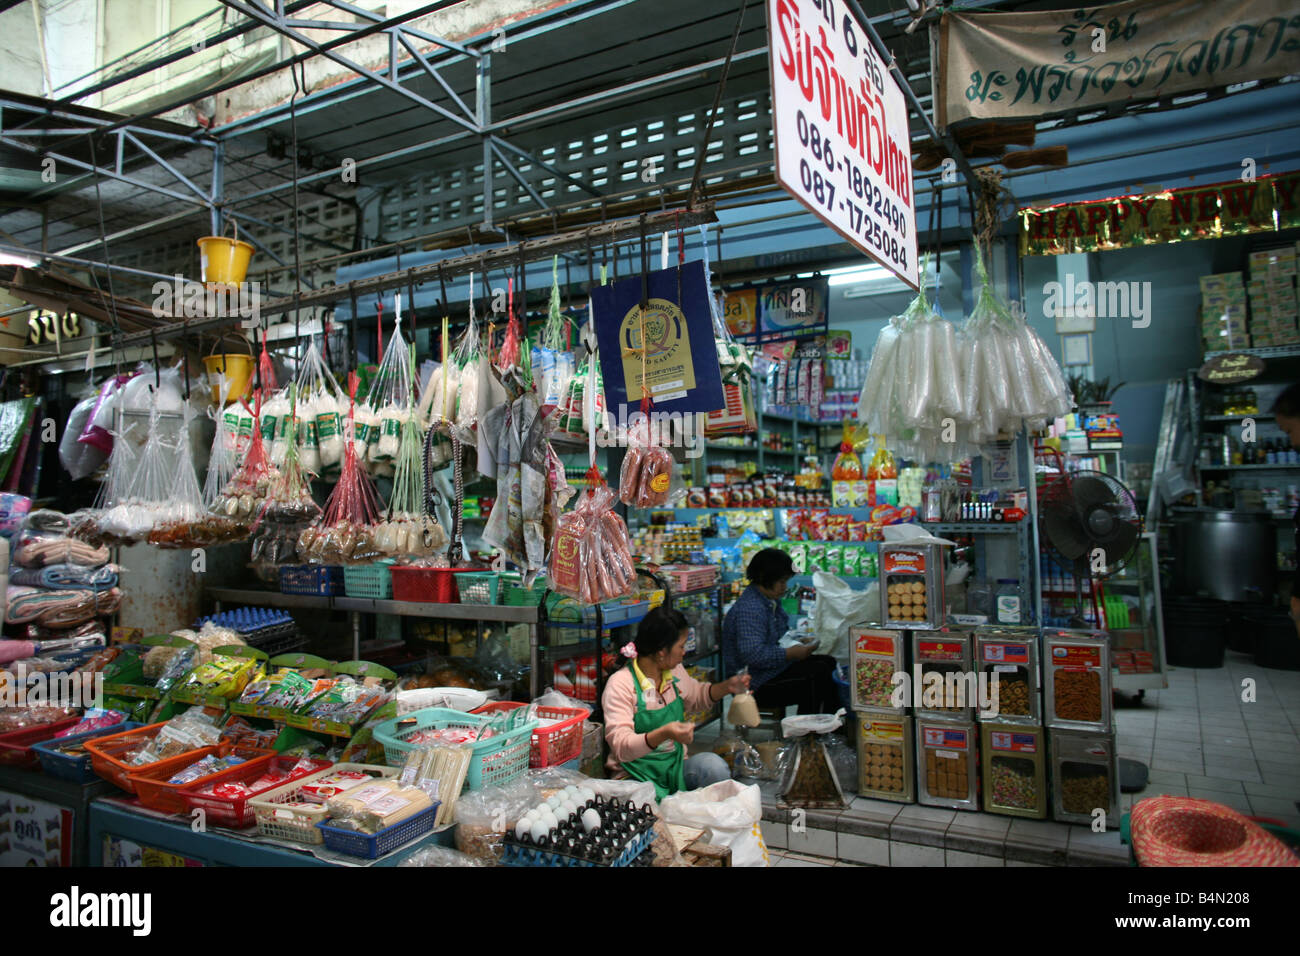 Innenraum eines Supermarktes in der Nähe von Longneck Dorf ca. 300 birmanischen Flüchtlinge in Thailand Mitglieder der indigenen Gruppe bekannt sind als die Longnecks, die größte der drei Dörfer wo live Longnecks Nai Soi genannt befindet sich in der Nähe von Mae Hong Son Stadt longnecks, tragen Metallringe auf den Hals, die das Schlüsselbein nach unten drücken und verlängern dem Hals, sie sind, eine touristische Attraktion Touristen besuchen Nai Soi zu fotografieren die Longnecks und ihr Kunsthandwerk kaufen die Dörfer werden von Menschenrechtsorganisationen als menschliche Zoos kritisiert. Stockfoto